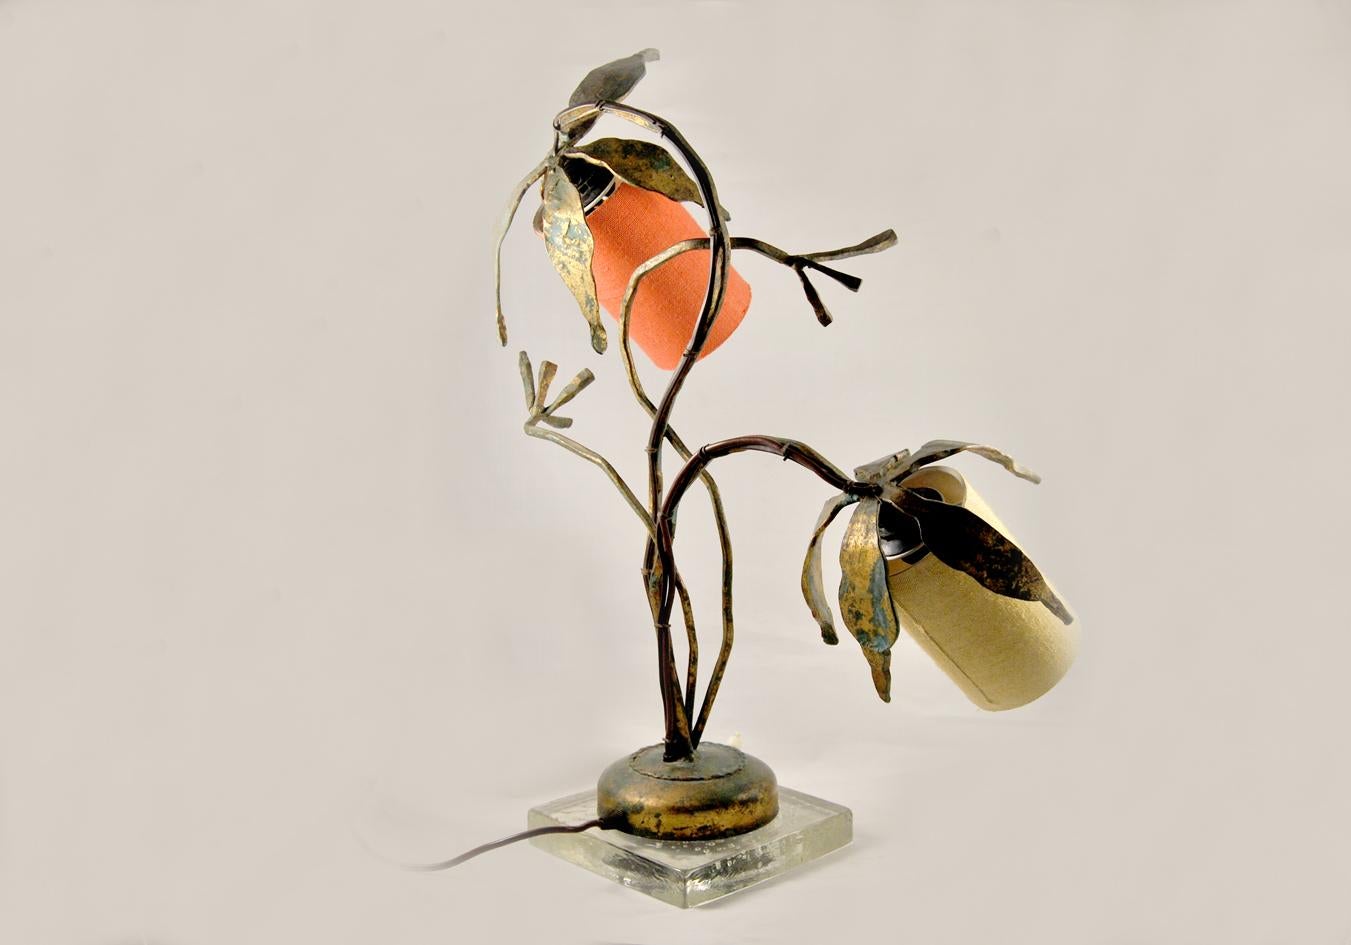 Lampe sculpture vintage en fer forgé de l'année  1950. 
Pièce unique en fer forgé doré et vieilli avec une base en verre transparent de 25 mm d'épaisseur.
La lampe est originale dans tous ses composants et entièrement fonctionnelle, belle comme un